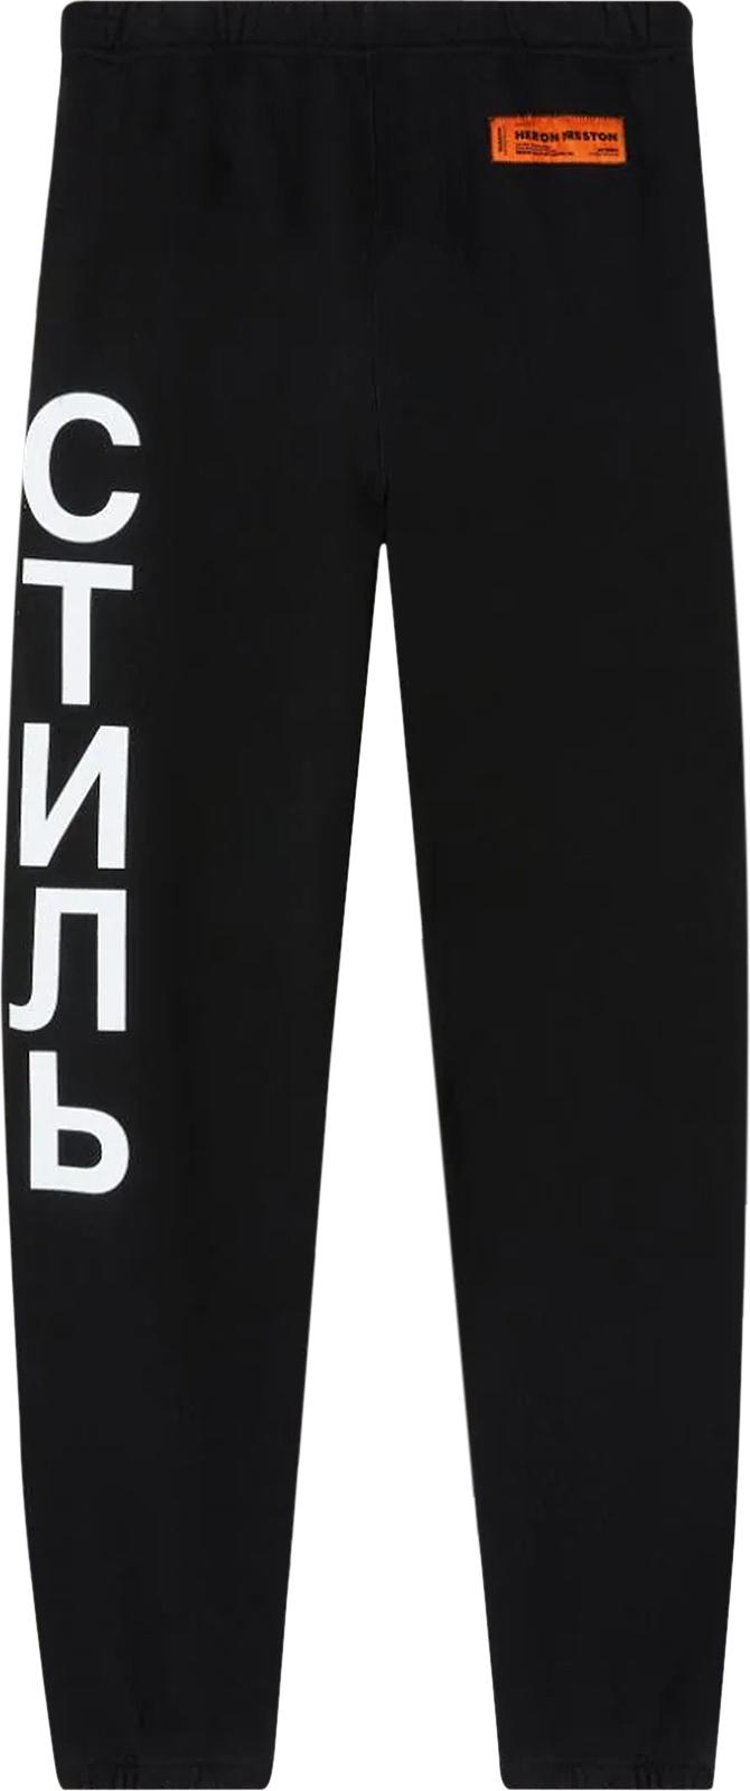 Спортивные брюки Heron Preston CTNMB Vertical Sweatpants 'Black/White', черный